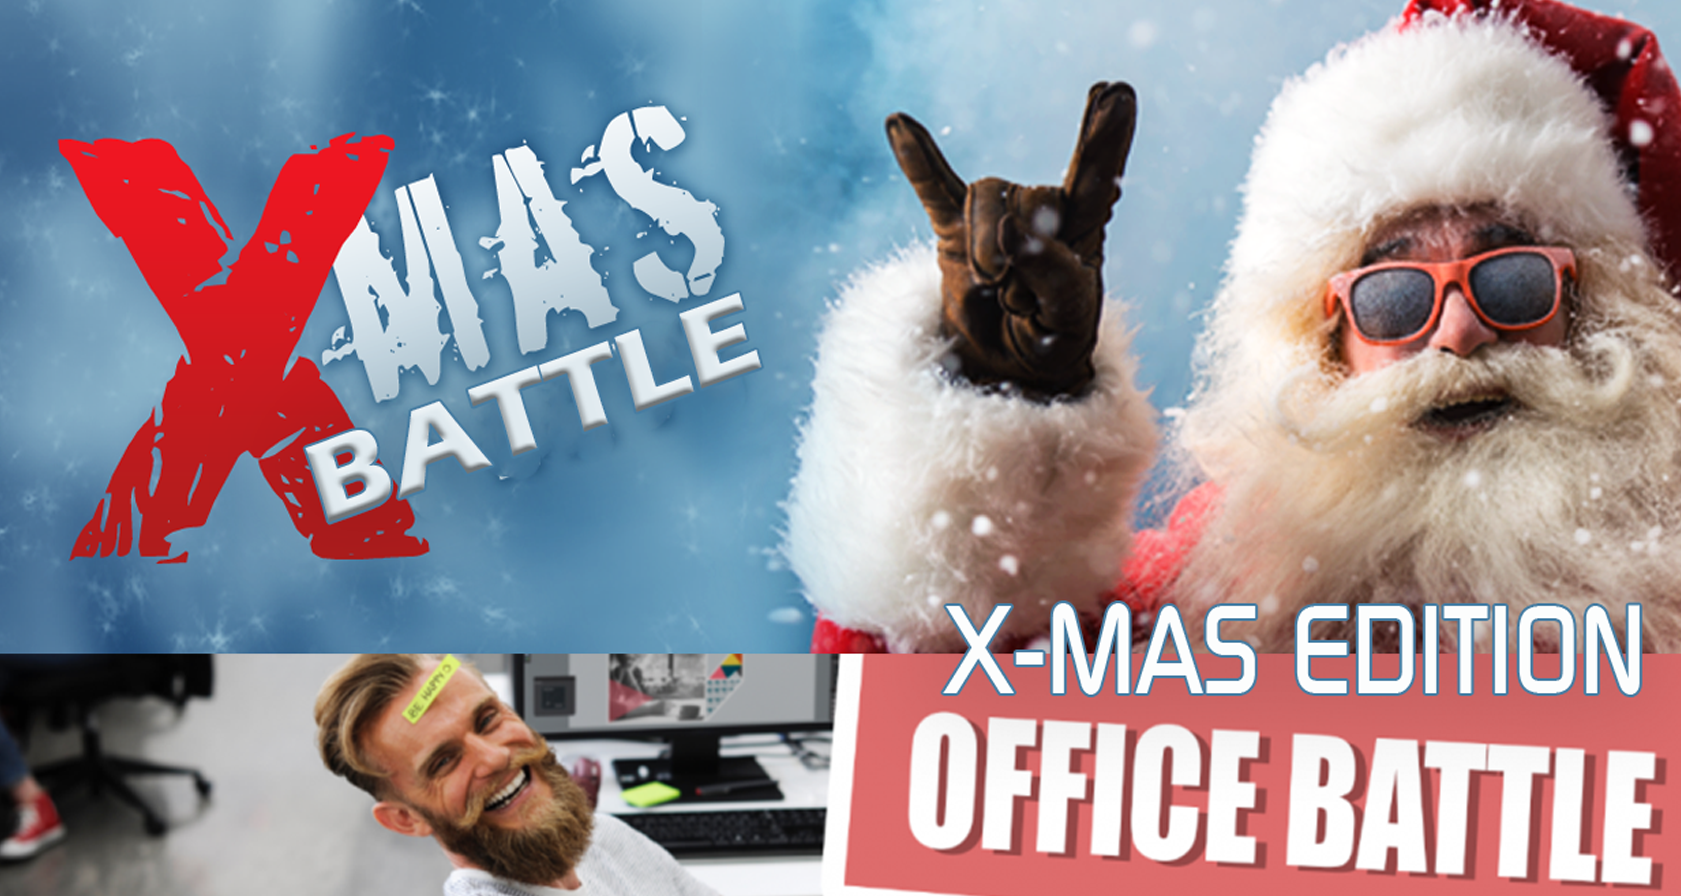 Indoor teamuitje: X-mas Office battle